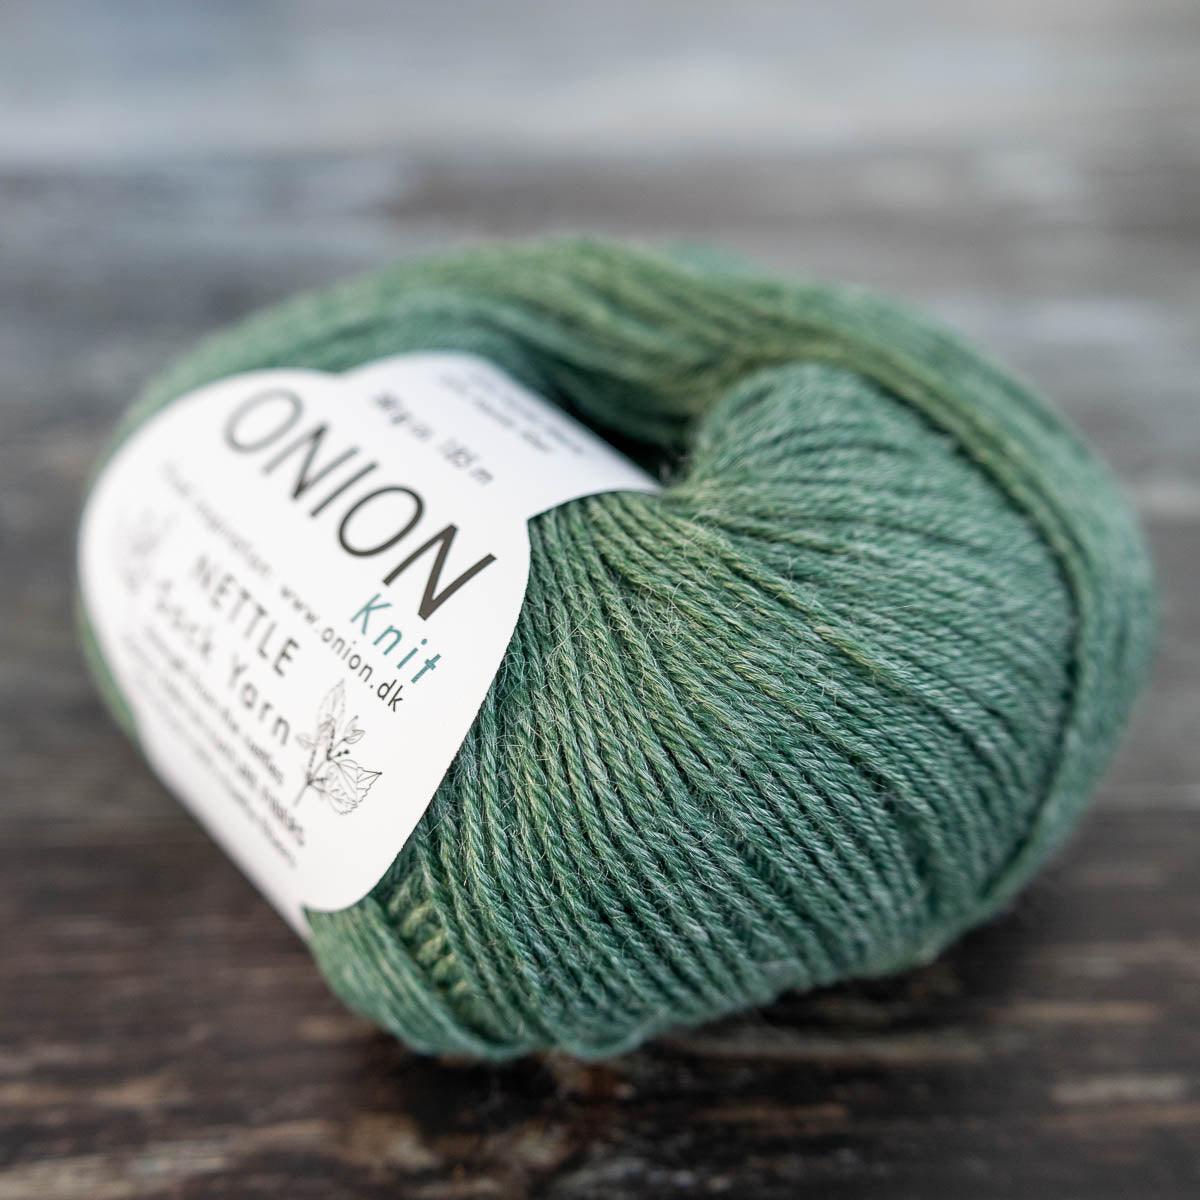 Onion Onion Nettle Sock Yarn - 1006 grøn - Yarn